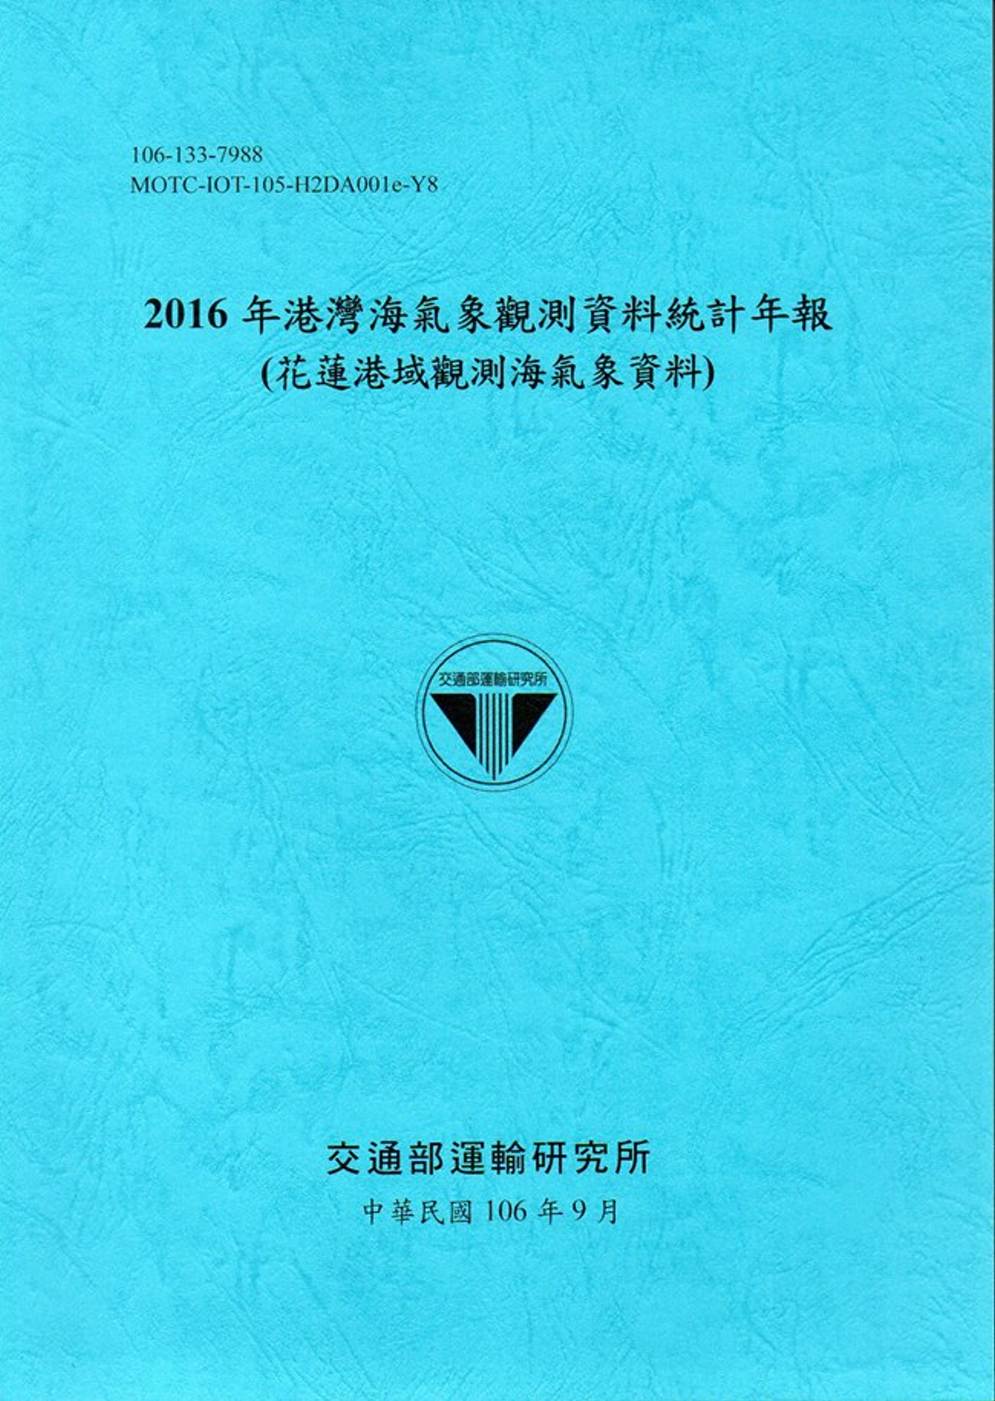 2016年港灣海氣象觀測資料統計年報(花蓮港域觀測海氣象資料)106深藍